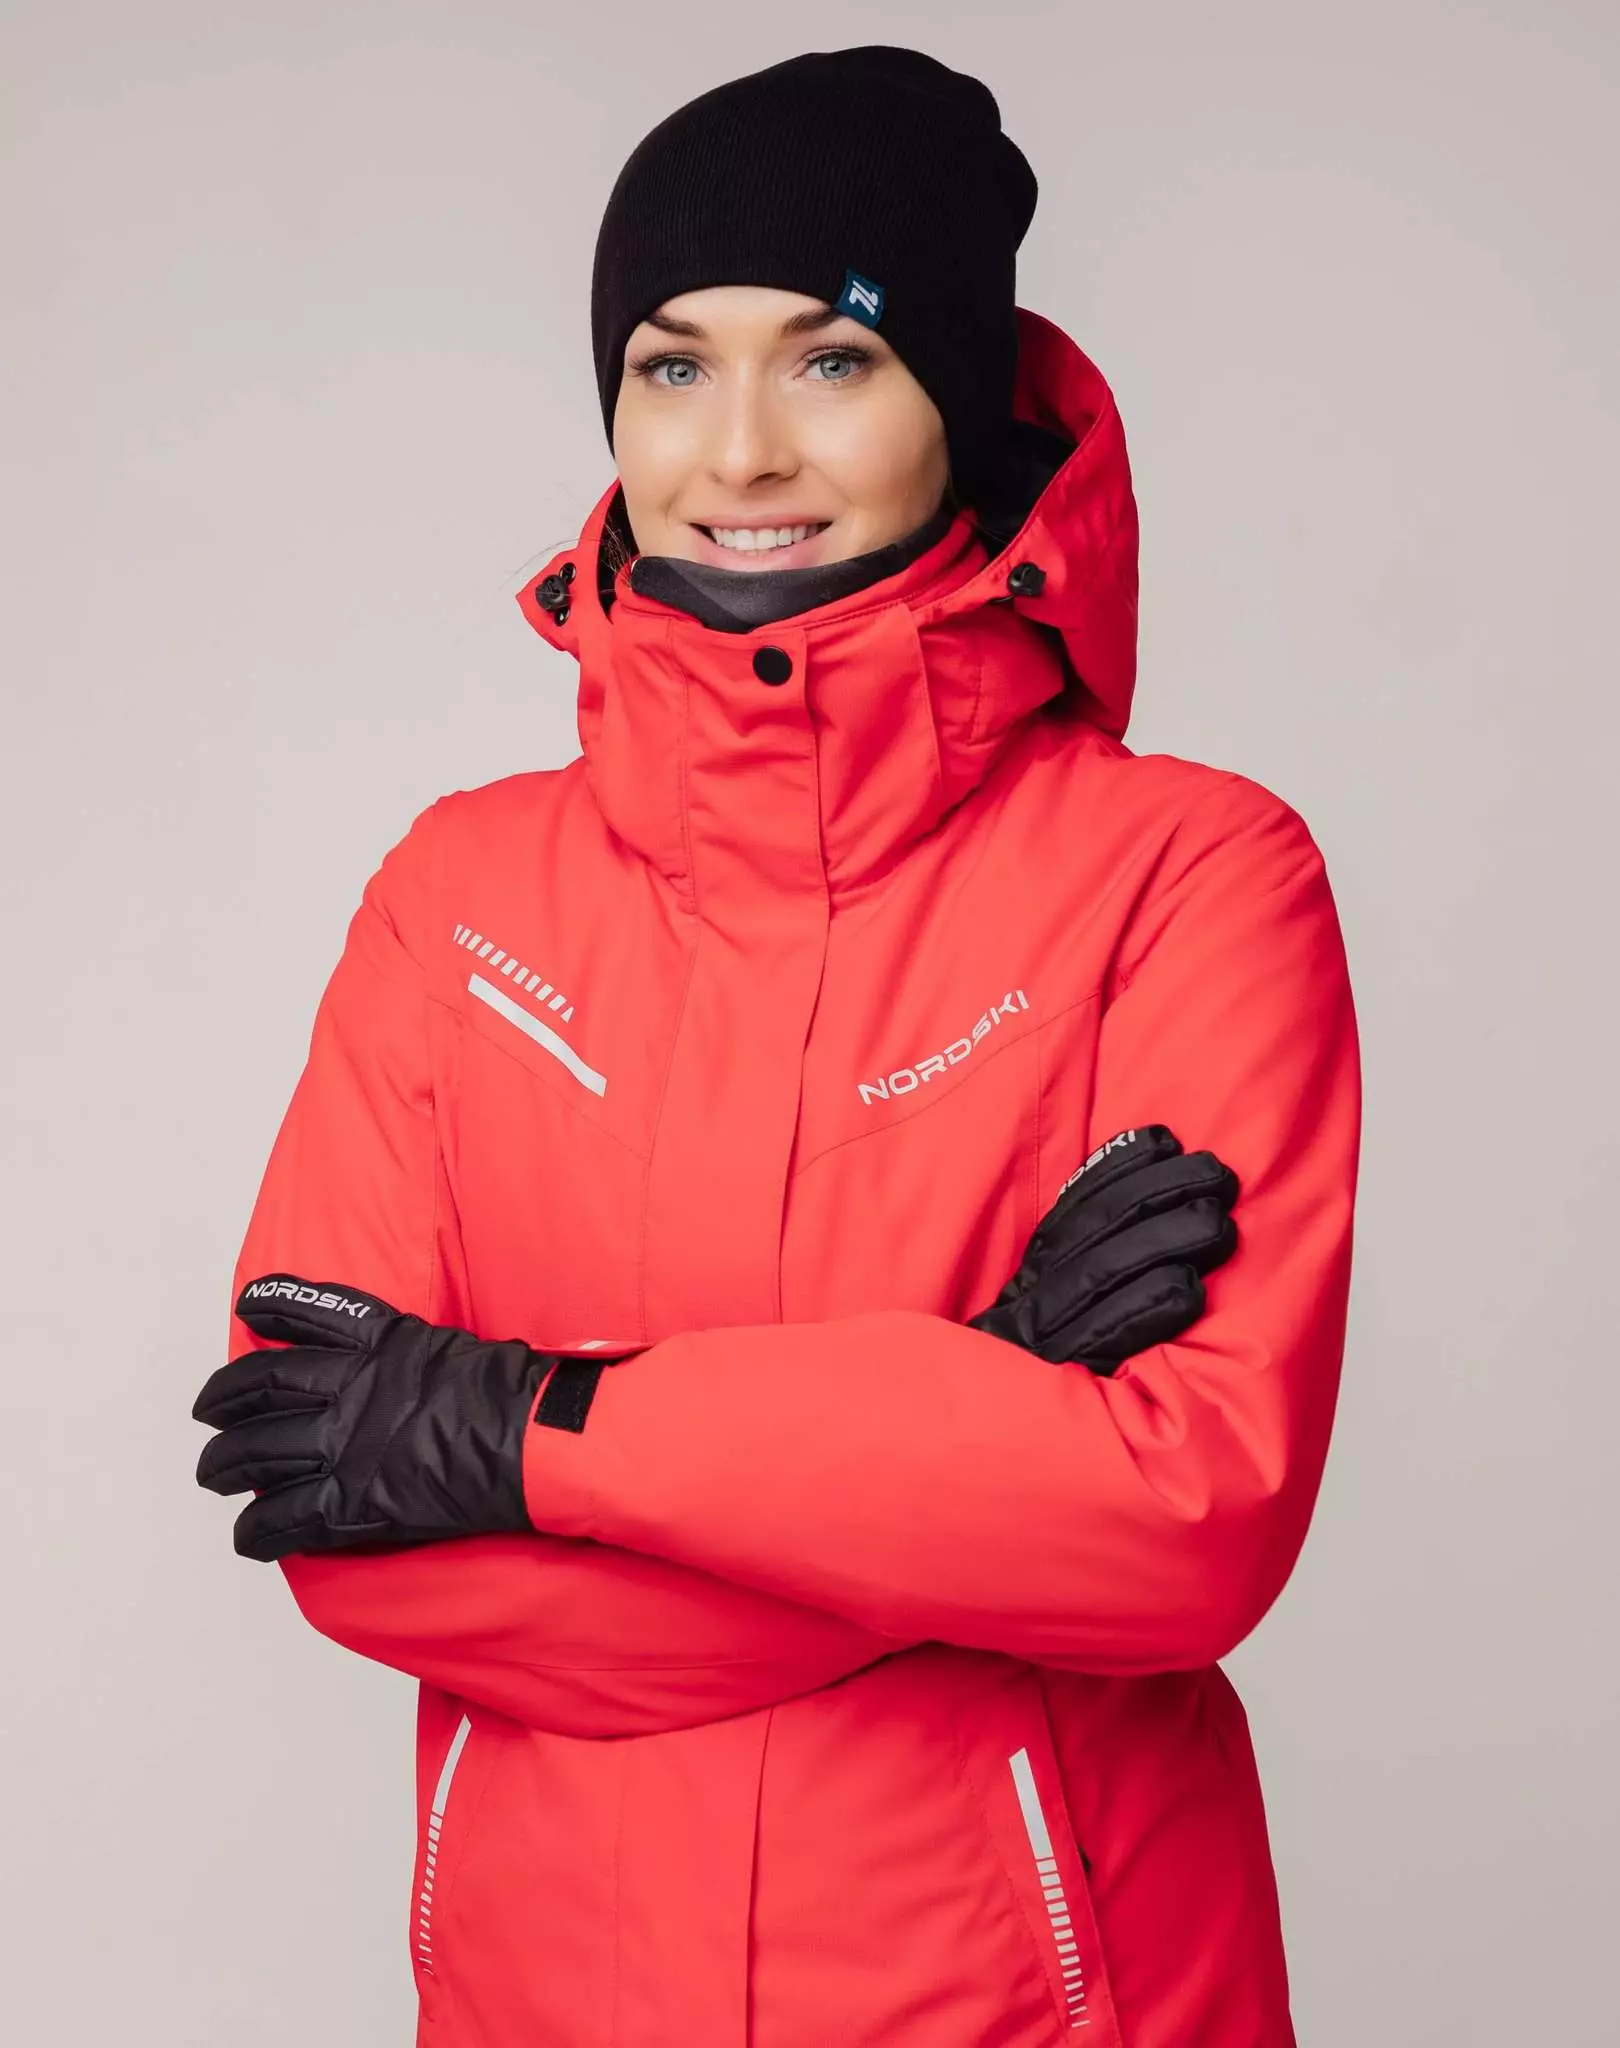 Giacca da sci: giacca invernale da donna per lo sci di fondo, giacche per bambini e skier per bambini di riscaldamento. Come scegliere per pattinare? 20201_25